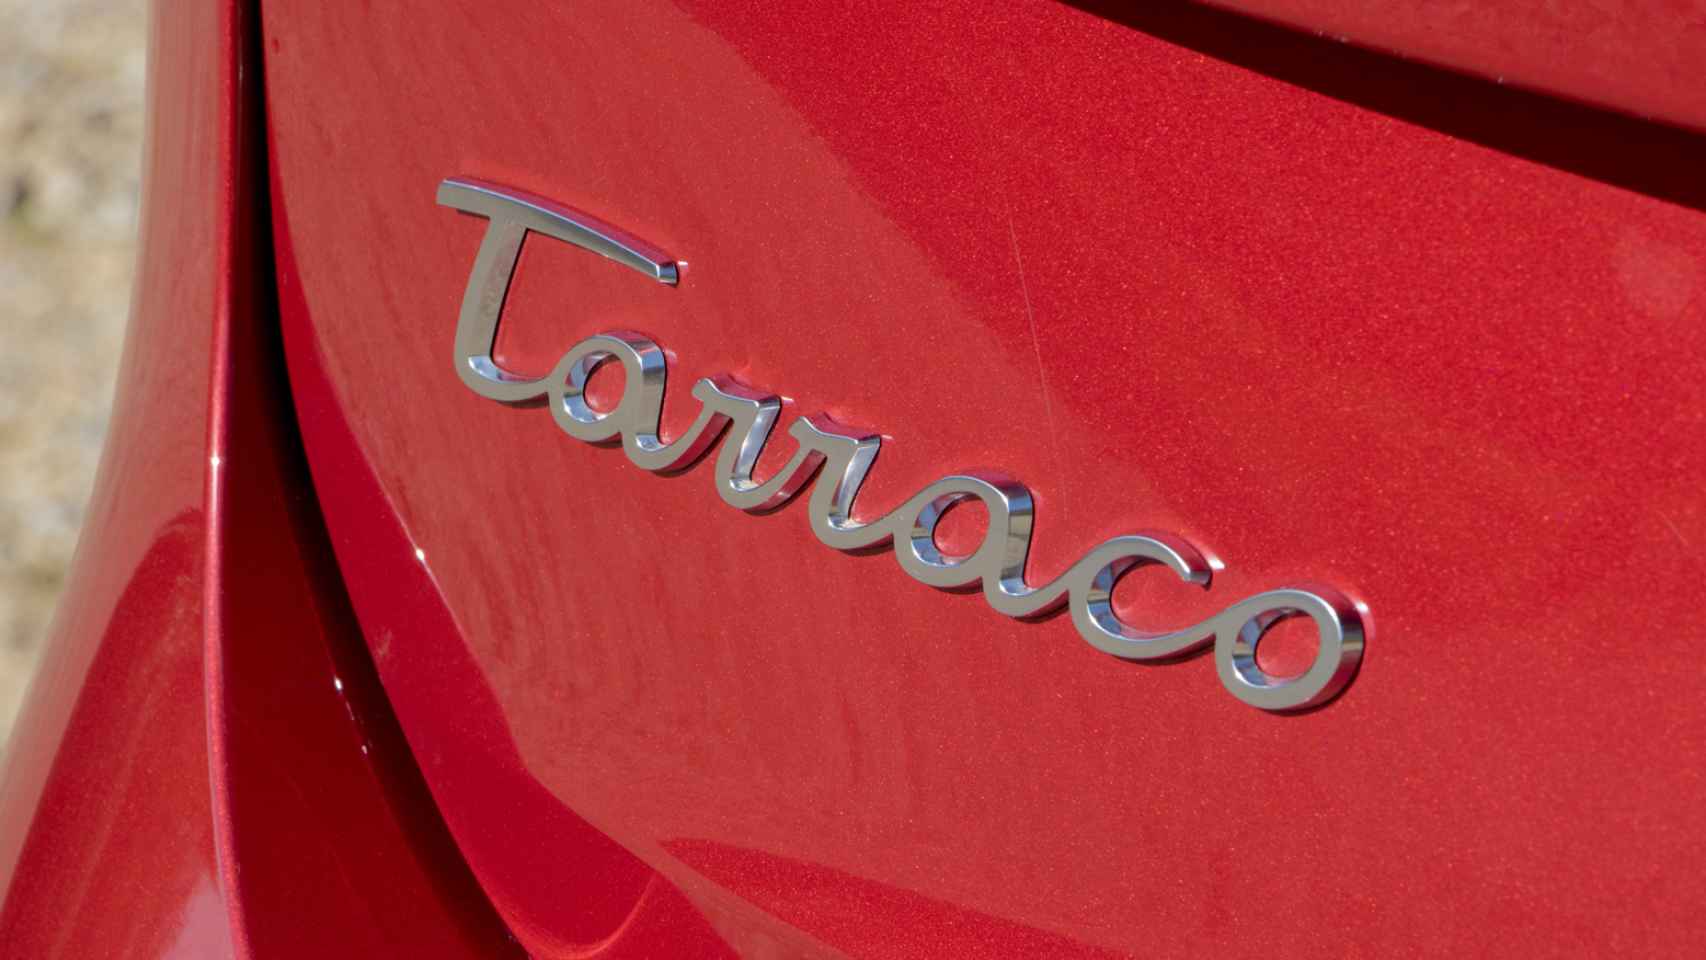 El Tarraco estrena nueva tipografía como el Seat Ateca y el Seat León.